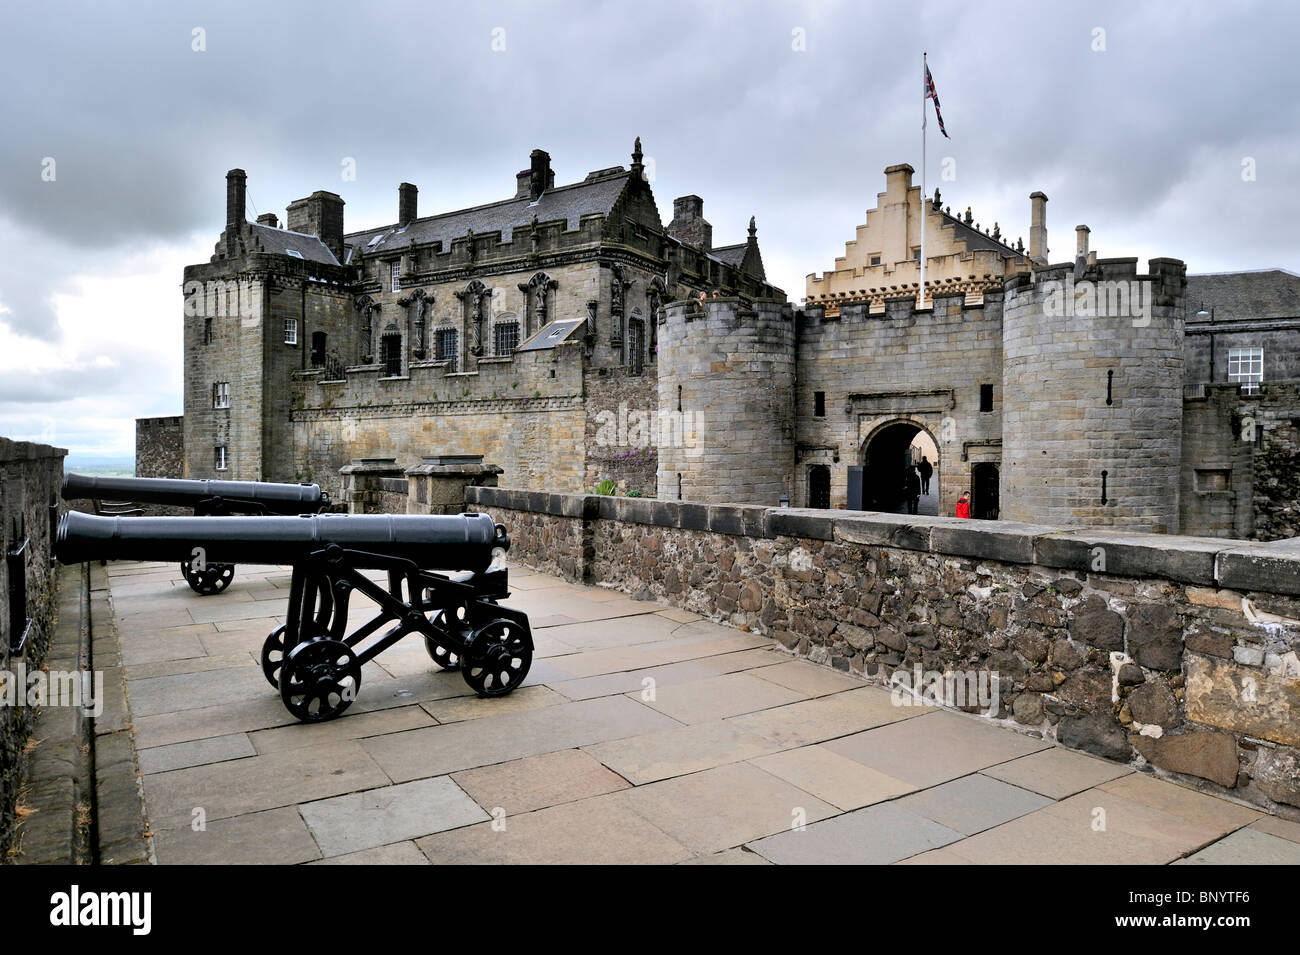 Canons à Château de Stirling, Scotland, UK Banque D'Images